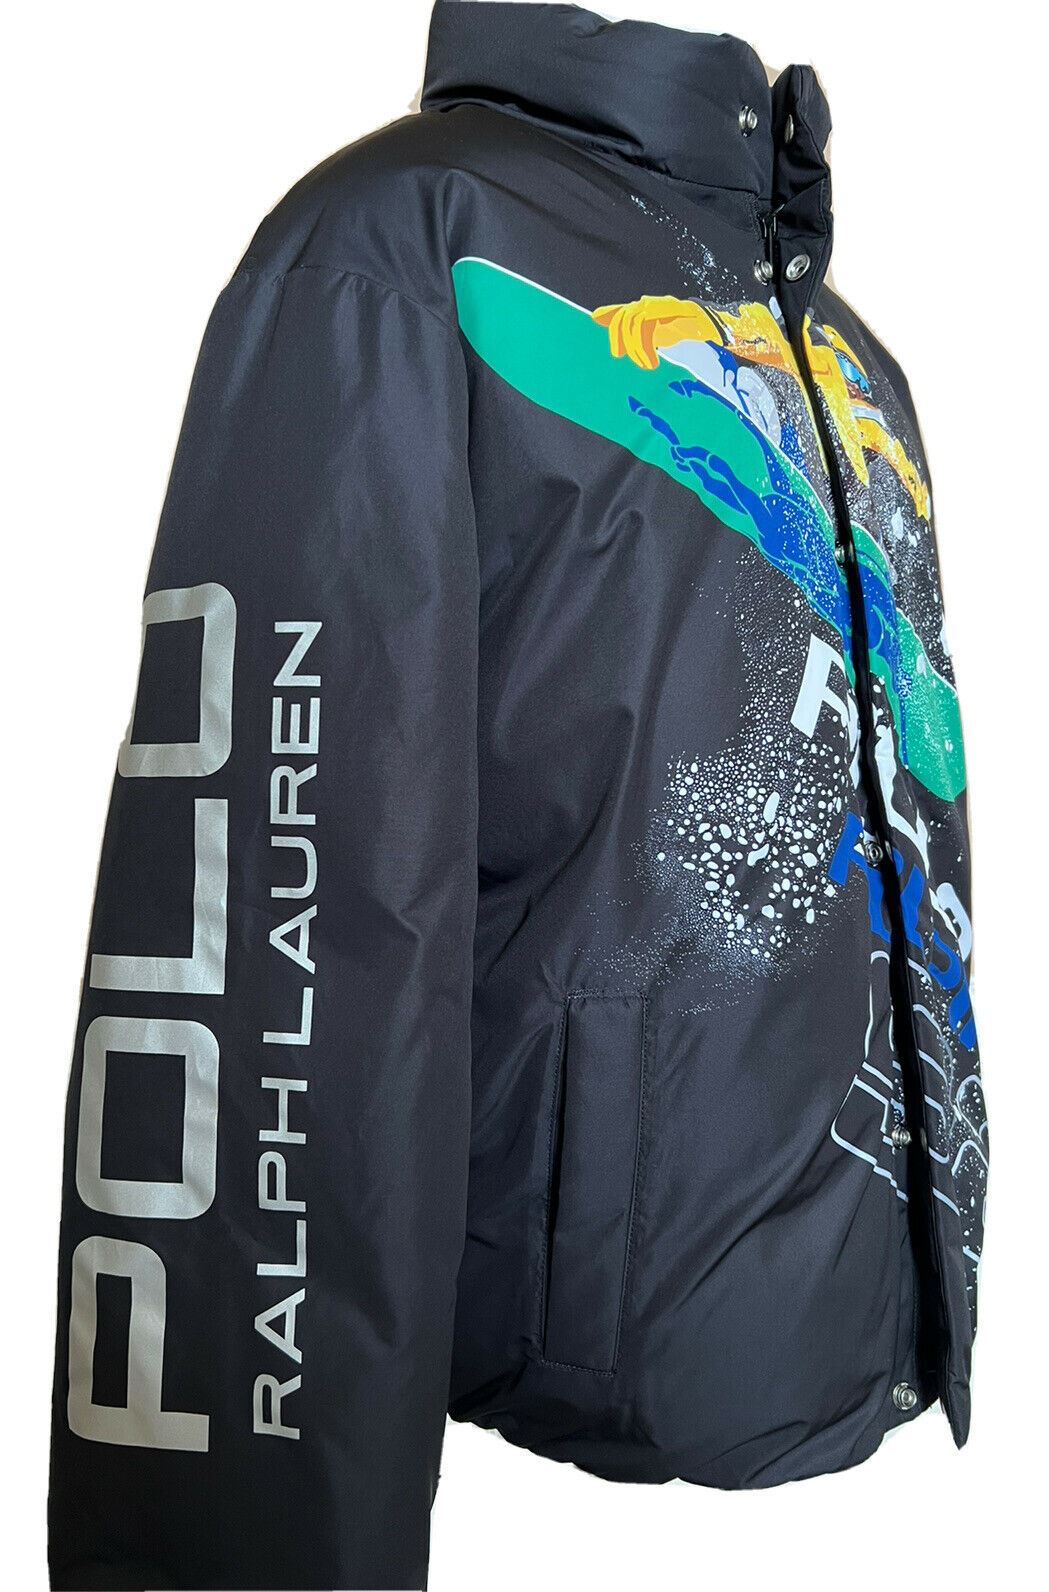 NWT $498 Polo Ralph Lauren Alpine Men's Black Parka Jacket Large